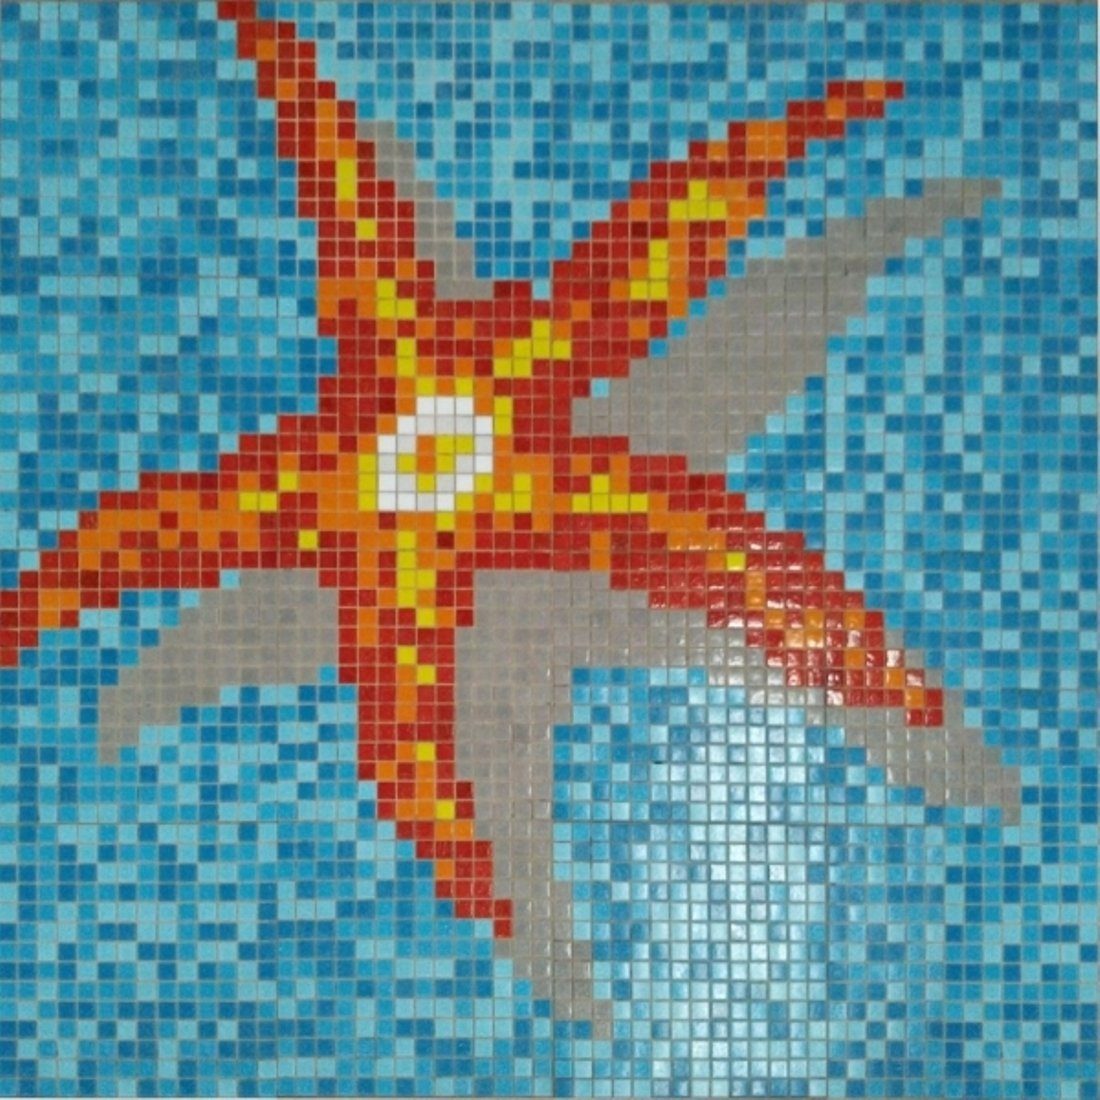 Mosani Mosaikfliesen Seestern Bild Poolboden Glasmosaik Schwimmbadfliesen 1,35m², Set, Papierverklebt